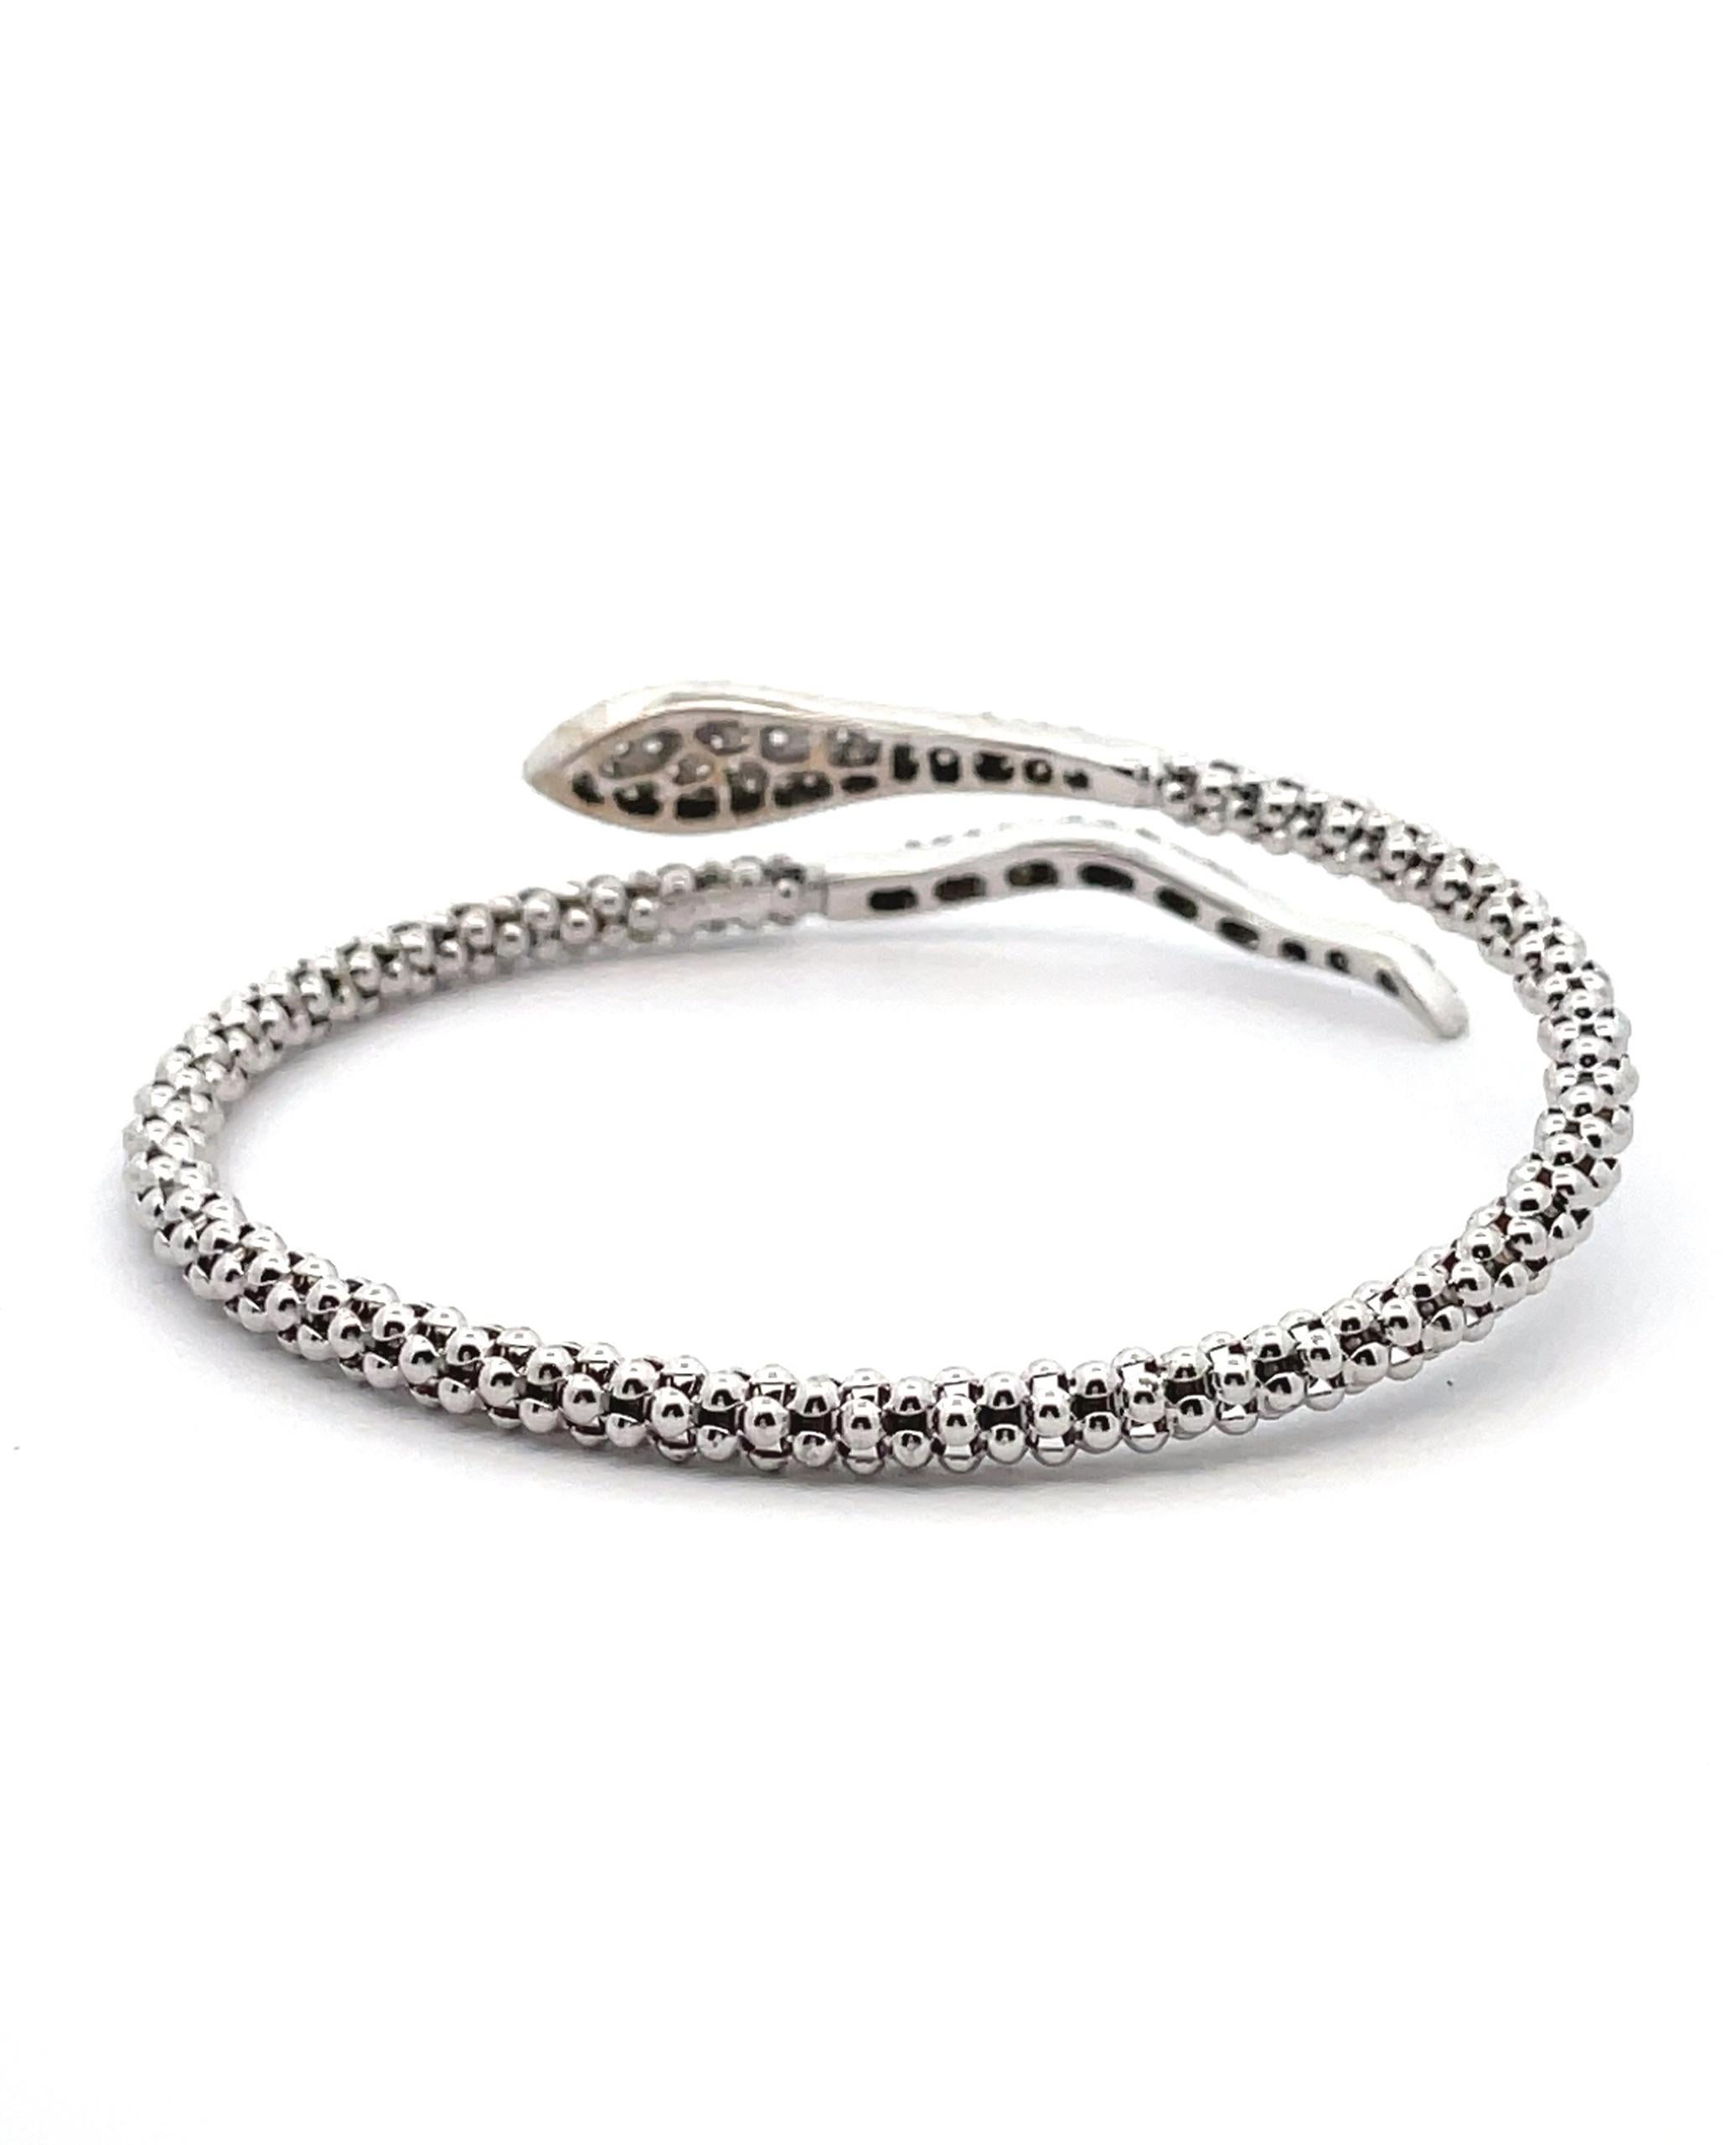 Bracelet serpent en or blanc 14K avec 110 diamants ronds de taille brillant sertis pavee pesant 0.90 carats au total.

* Les diamants sont de couleur G/H et de pureté SI.
* Bracelet semi-flexible